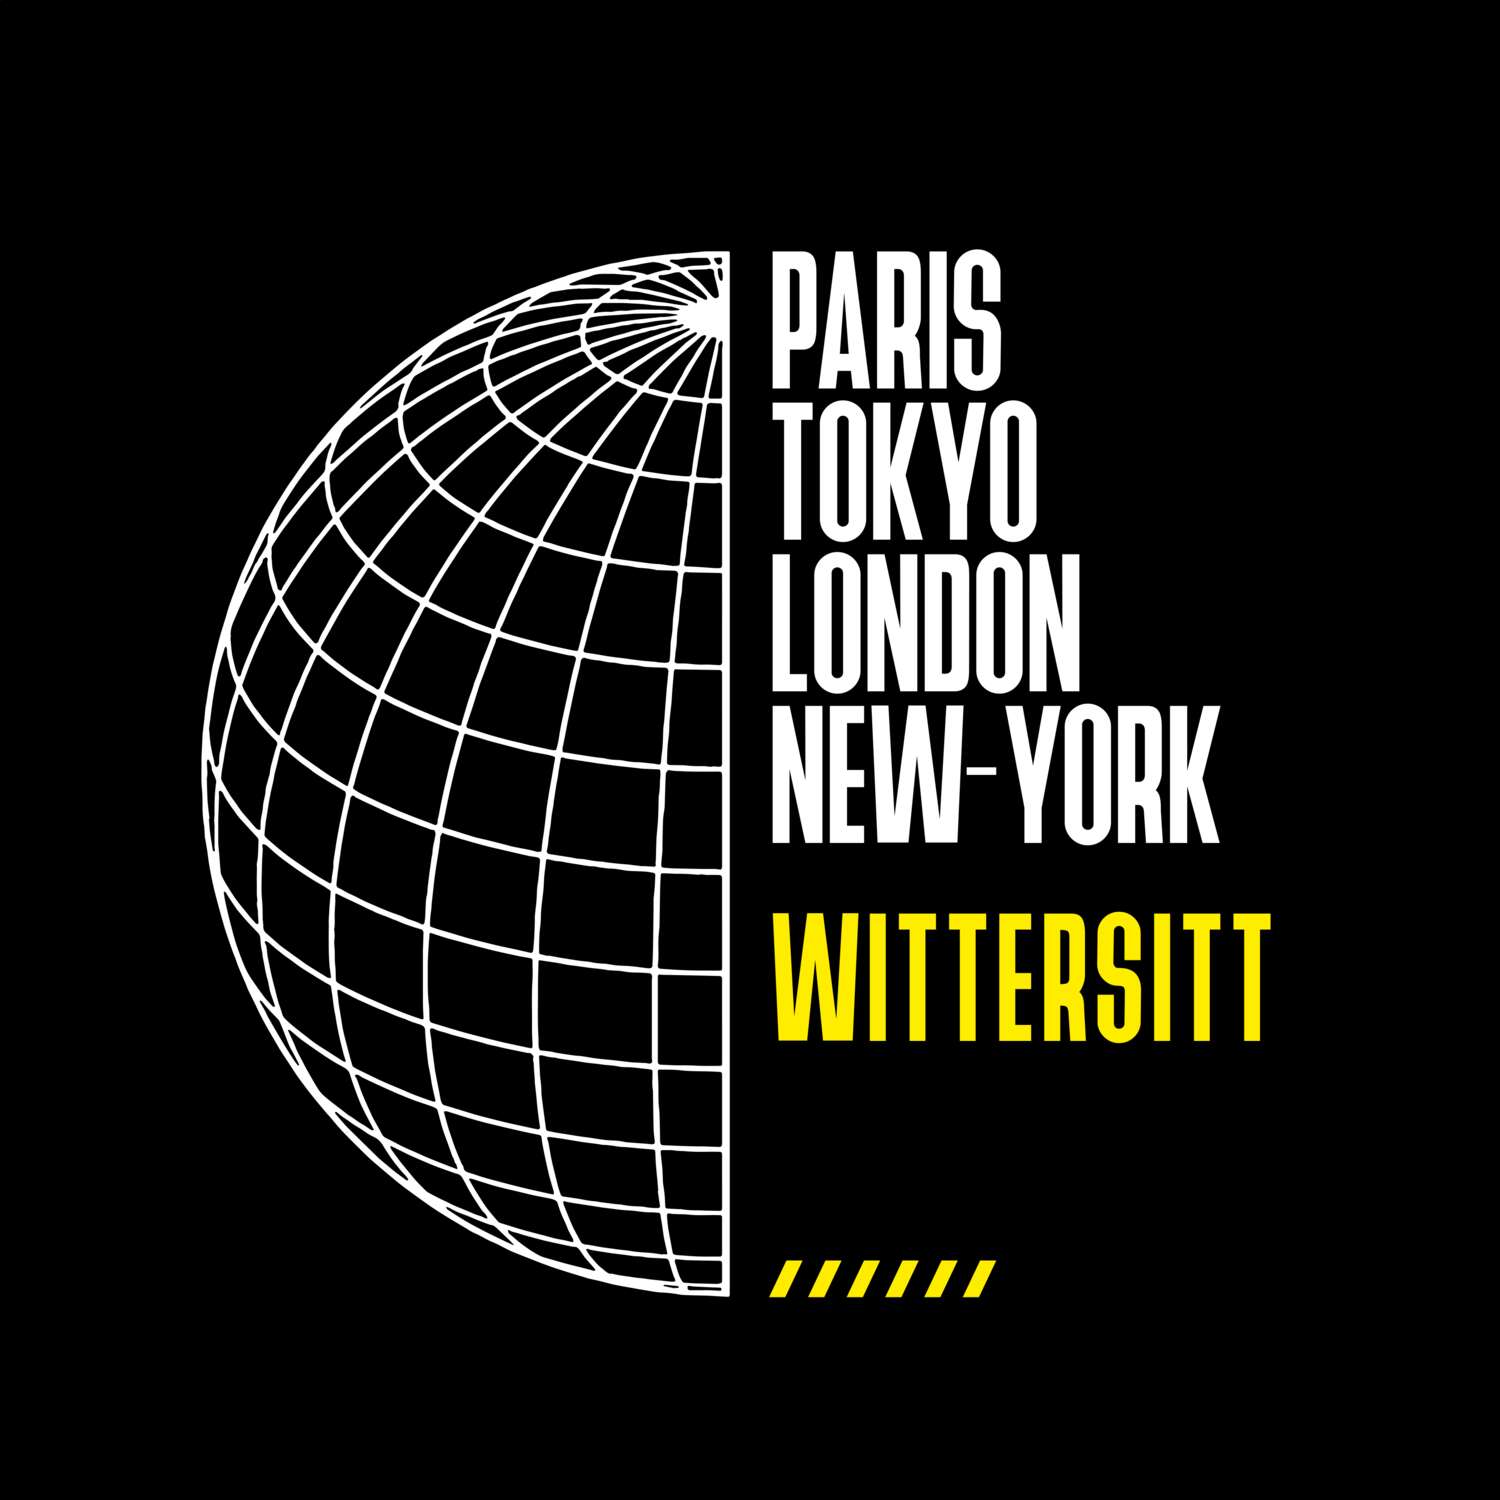 Wittersitt T-Shirt »Paris Tokyo London«